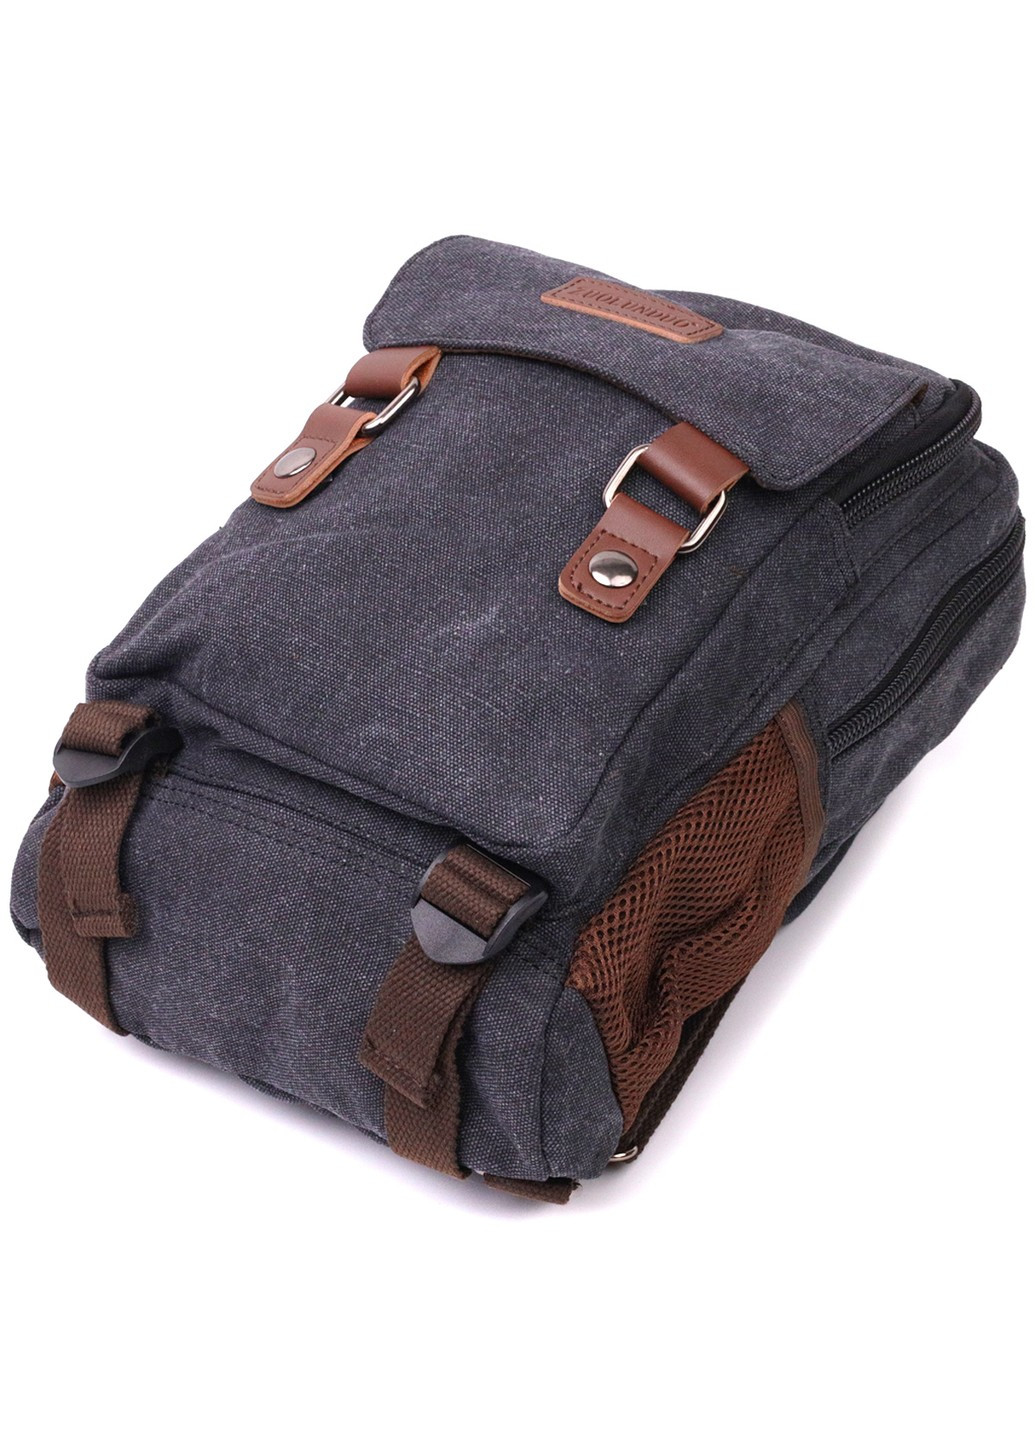 Практичный текстильный рюкзак с уплотненной спинкой и отделением для планшета 22168 Черный Vintage (267925323)